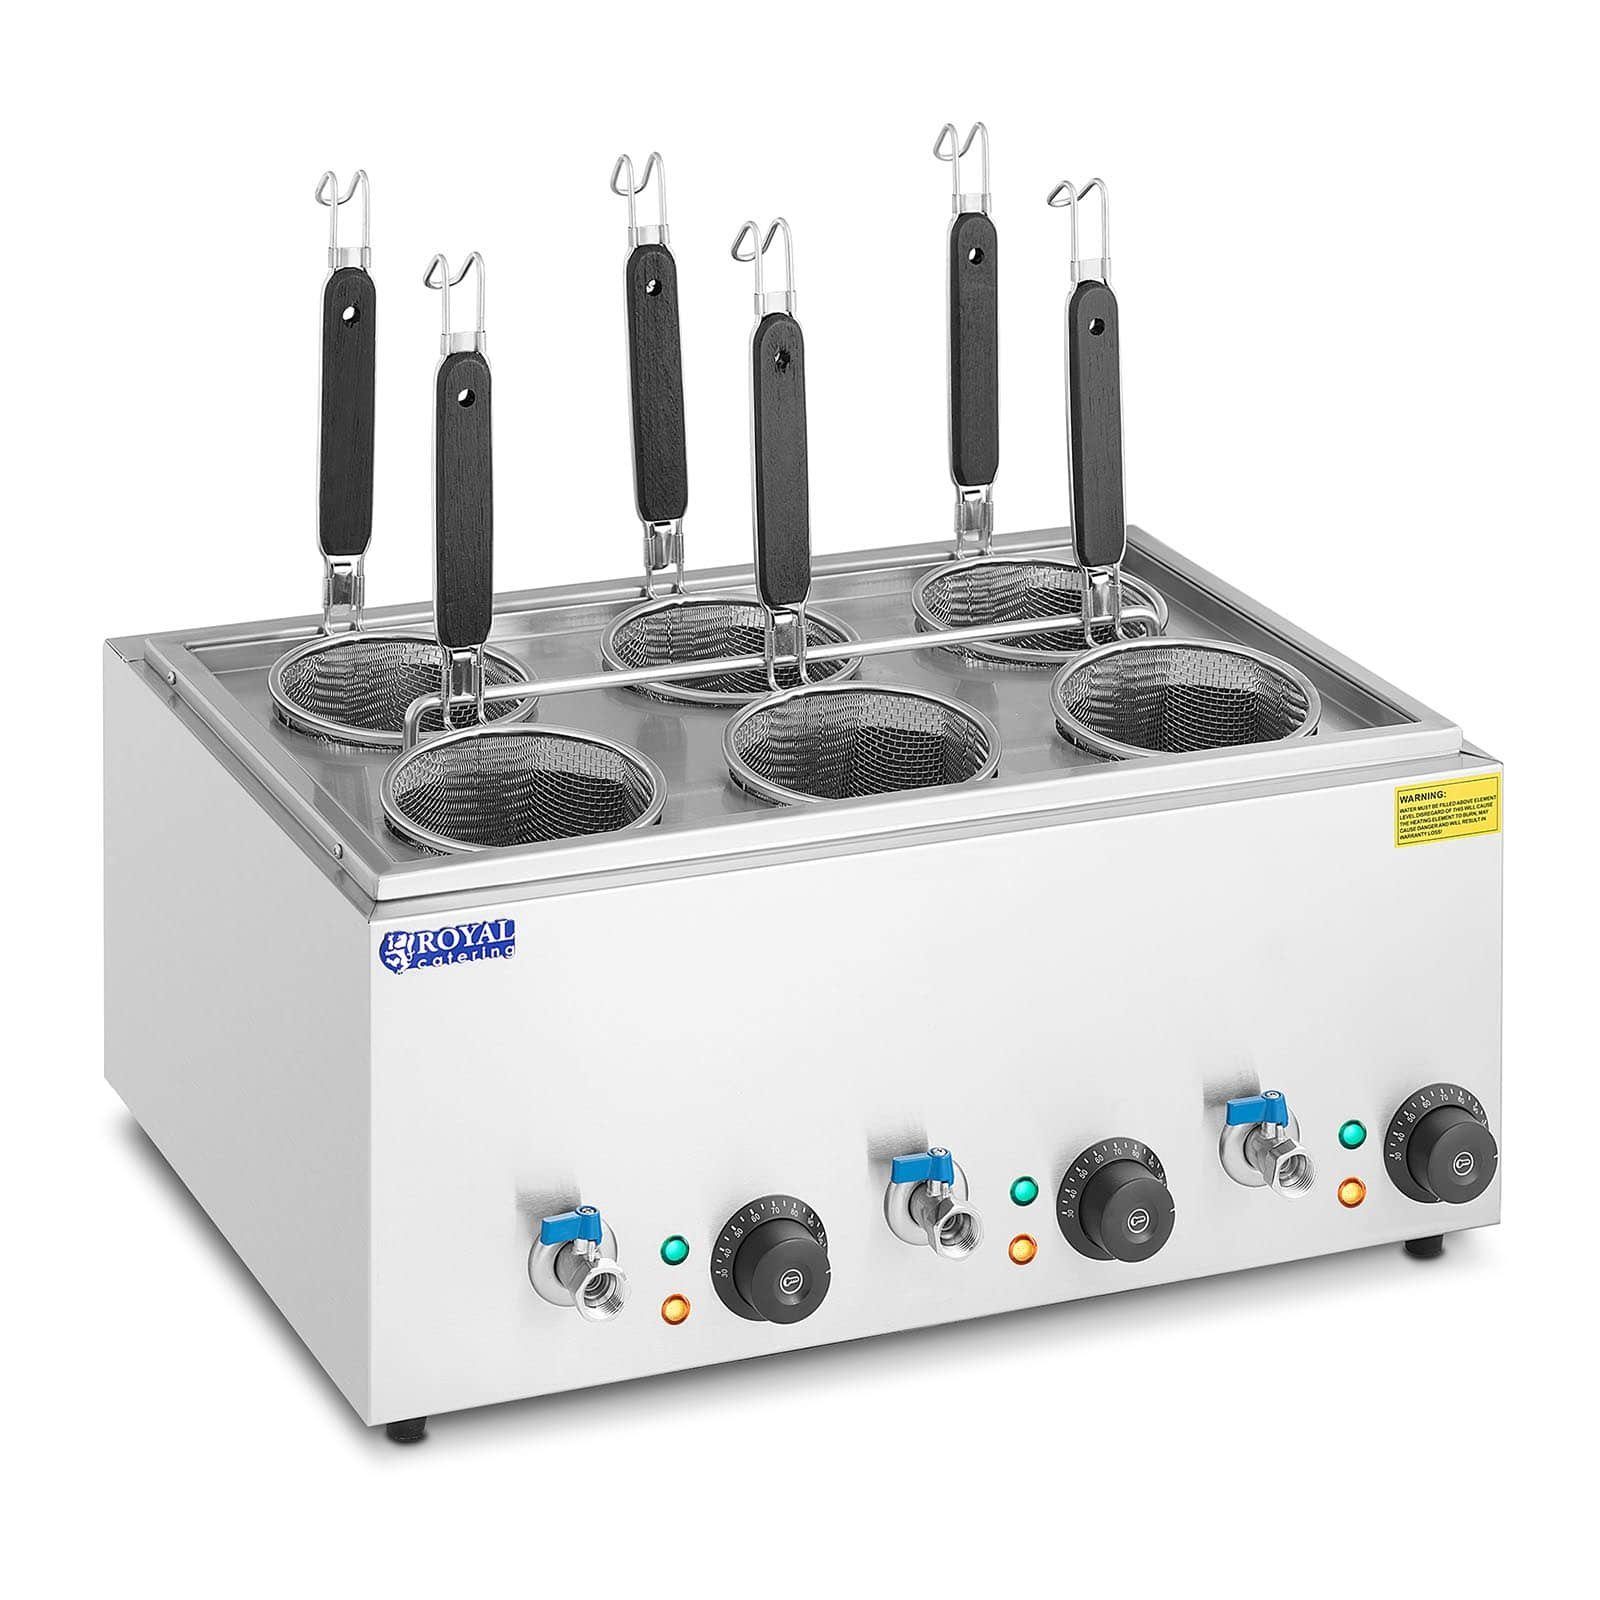 Royal Catering Nudelmaschine Nudelkocher mit 6 Körben Pastakocher Pasta-Station Temperatur: 30 -, 3,000 W